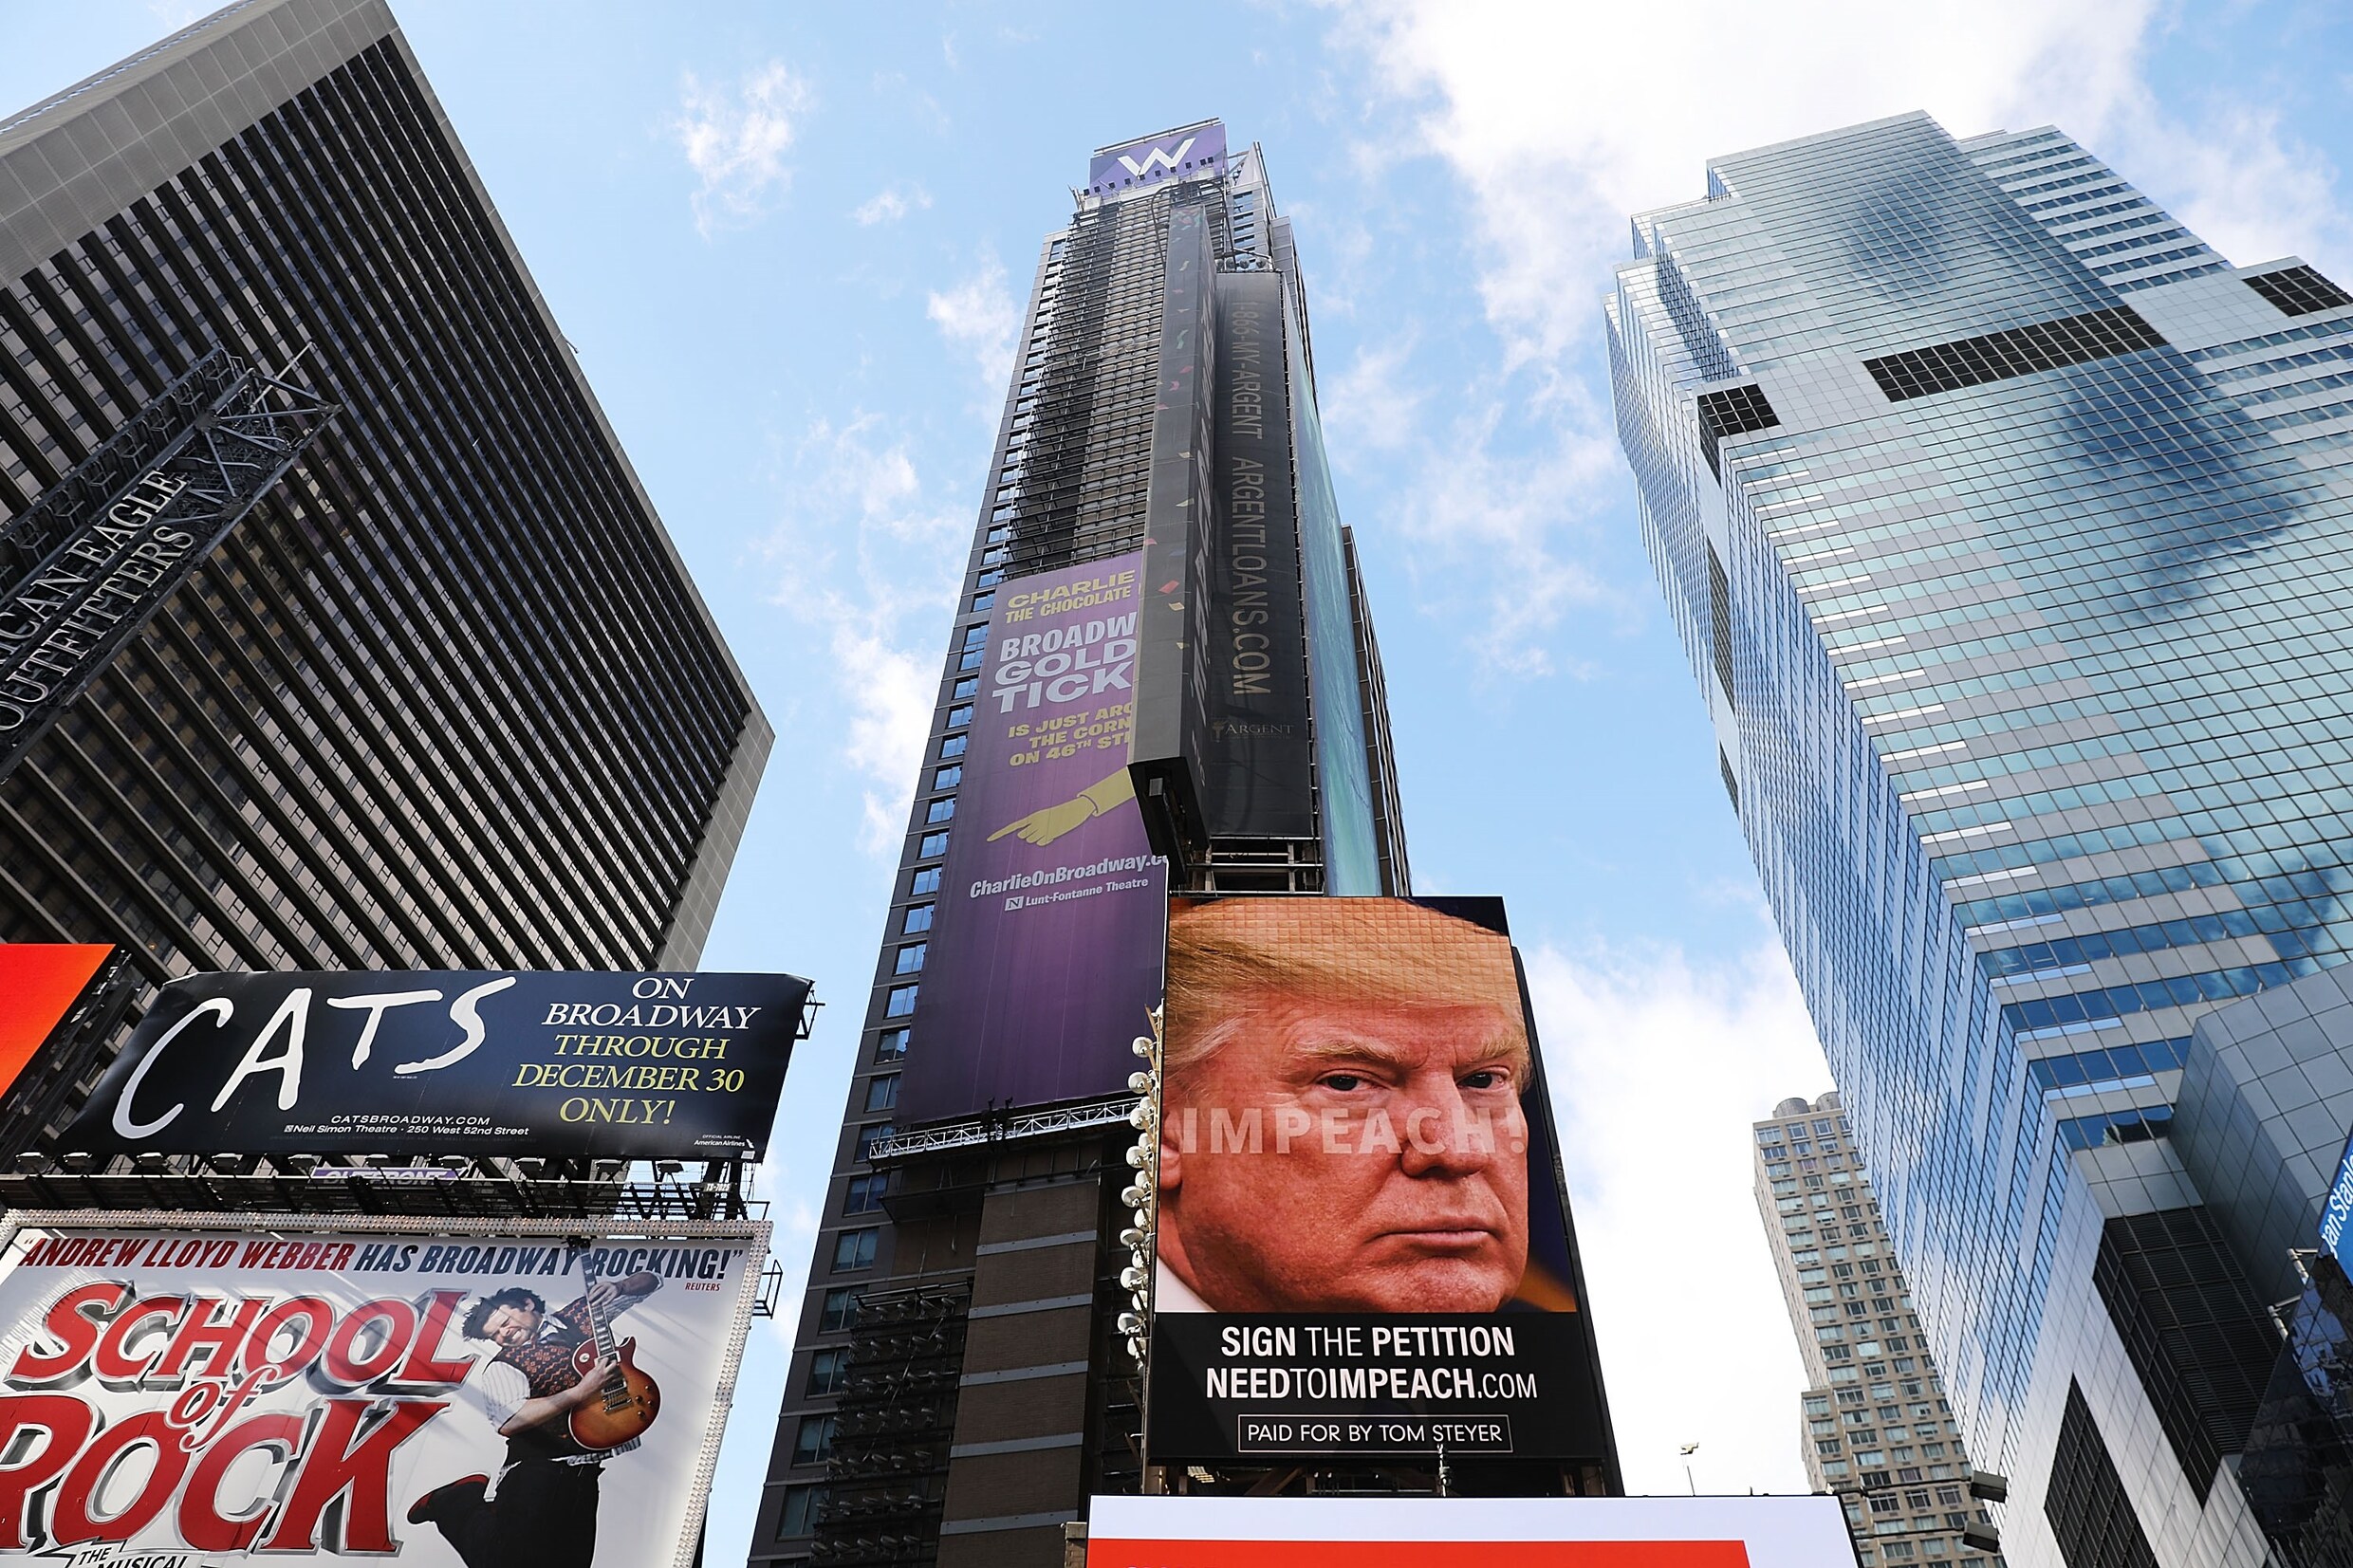 Miljardair betaalt 20 miljoen dollar voor enorme billboards op Times Square, gericht aan Trump: "Neem ontslag!"